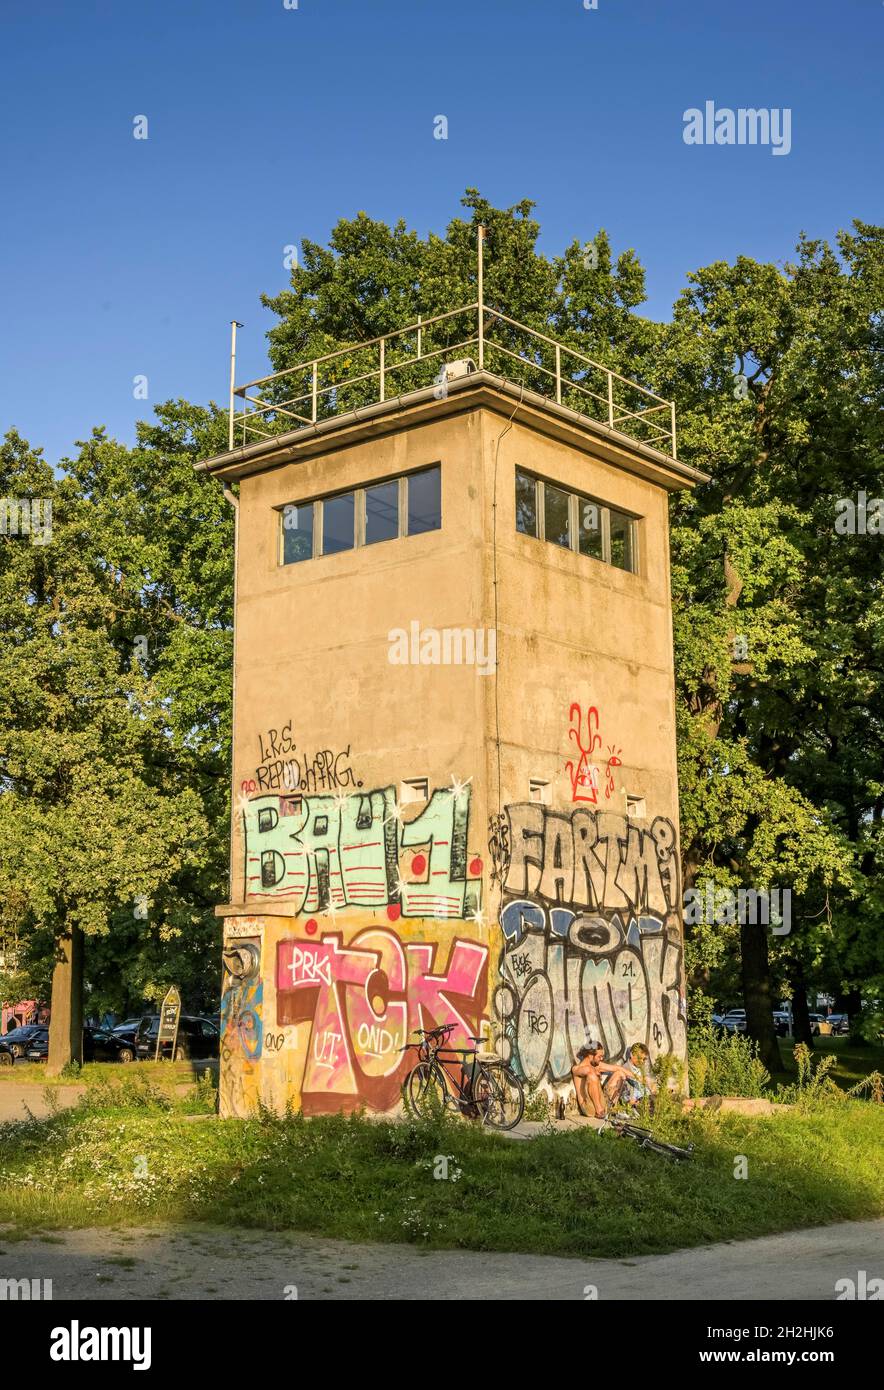 Alter DDR-Wachturm, Schlesische Straße, Treptow, Berlin, Deutschland Stock Photo